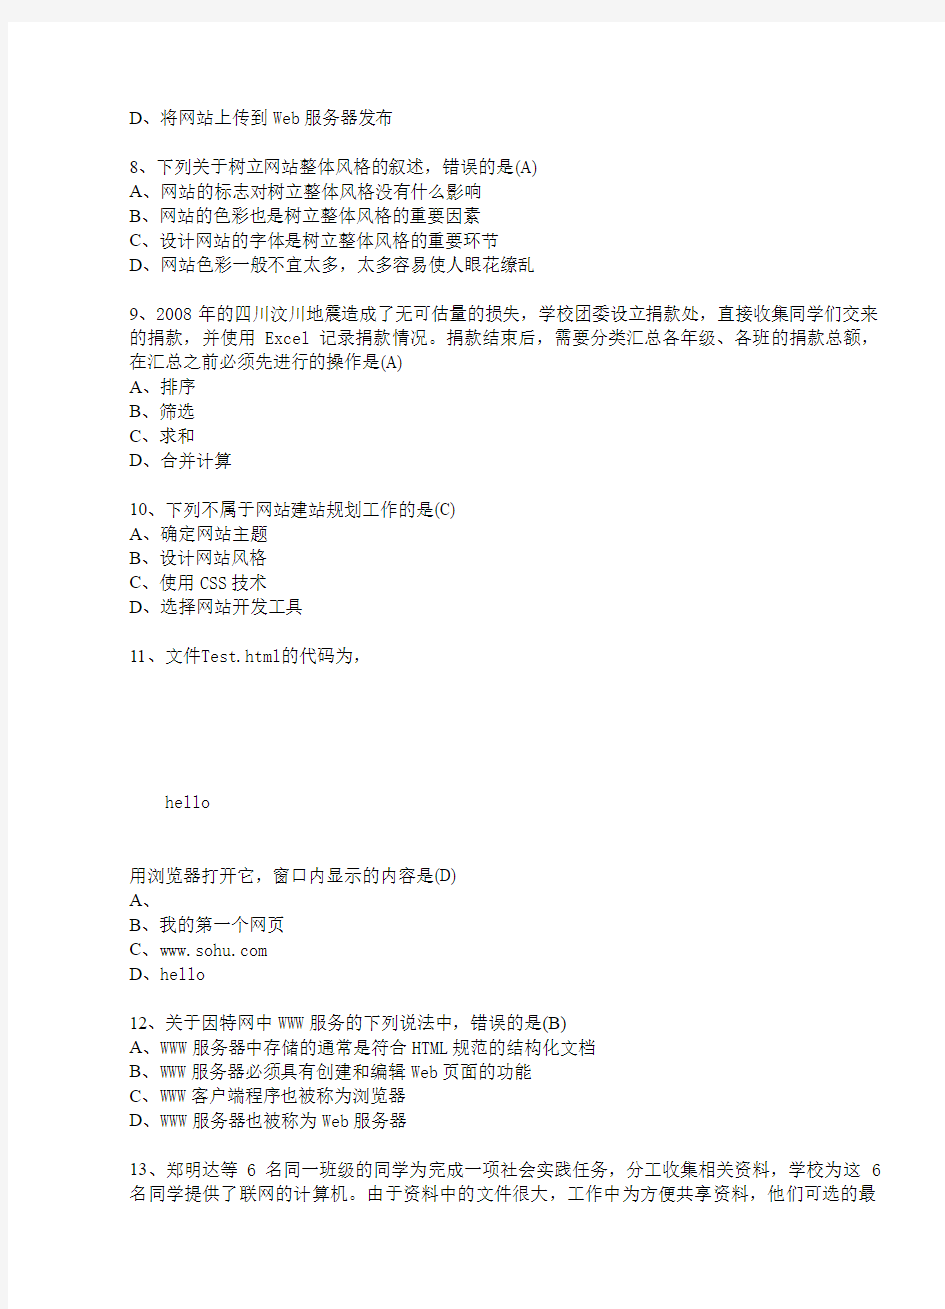 江苏省高中信息技术(31套)6-10套选择题答案和操作题